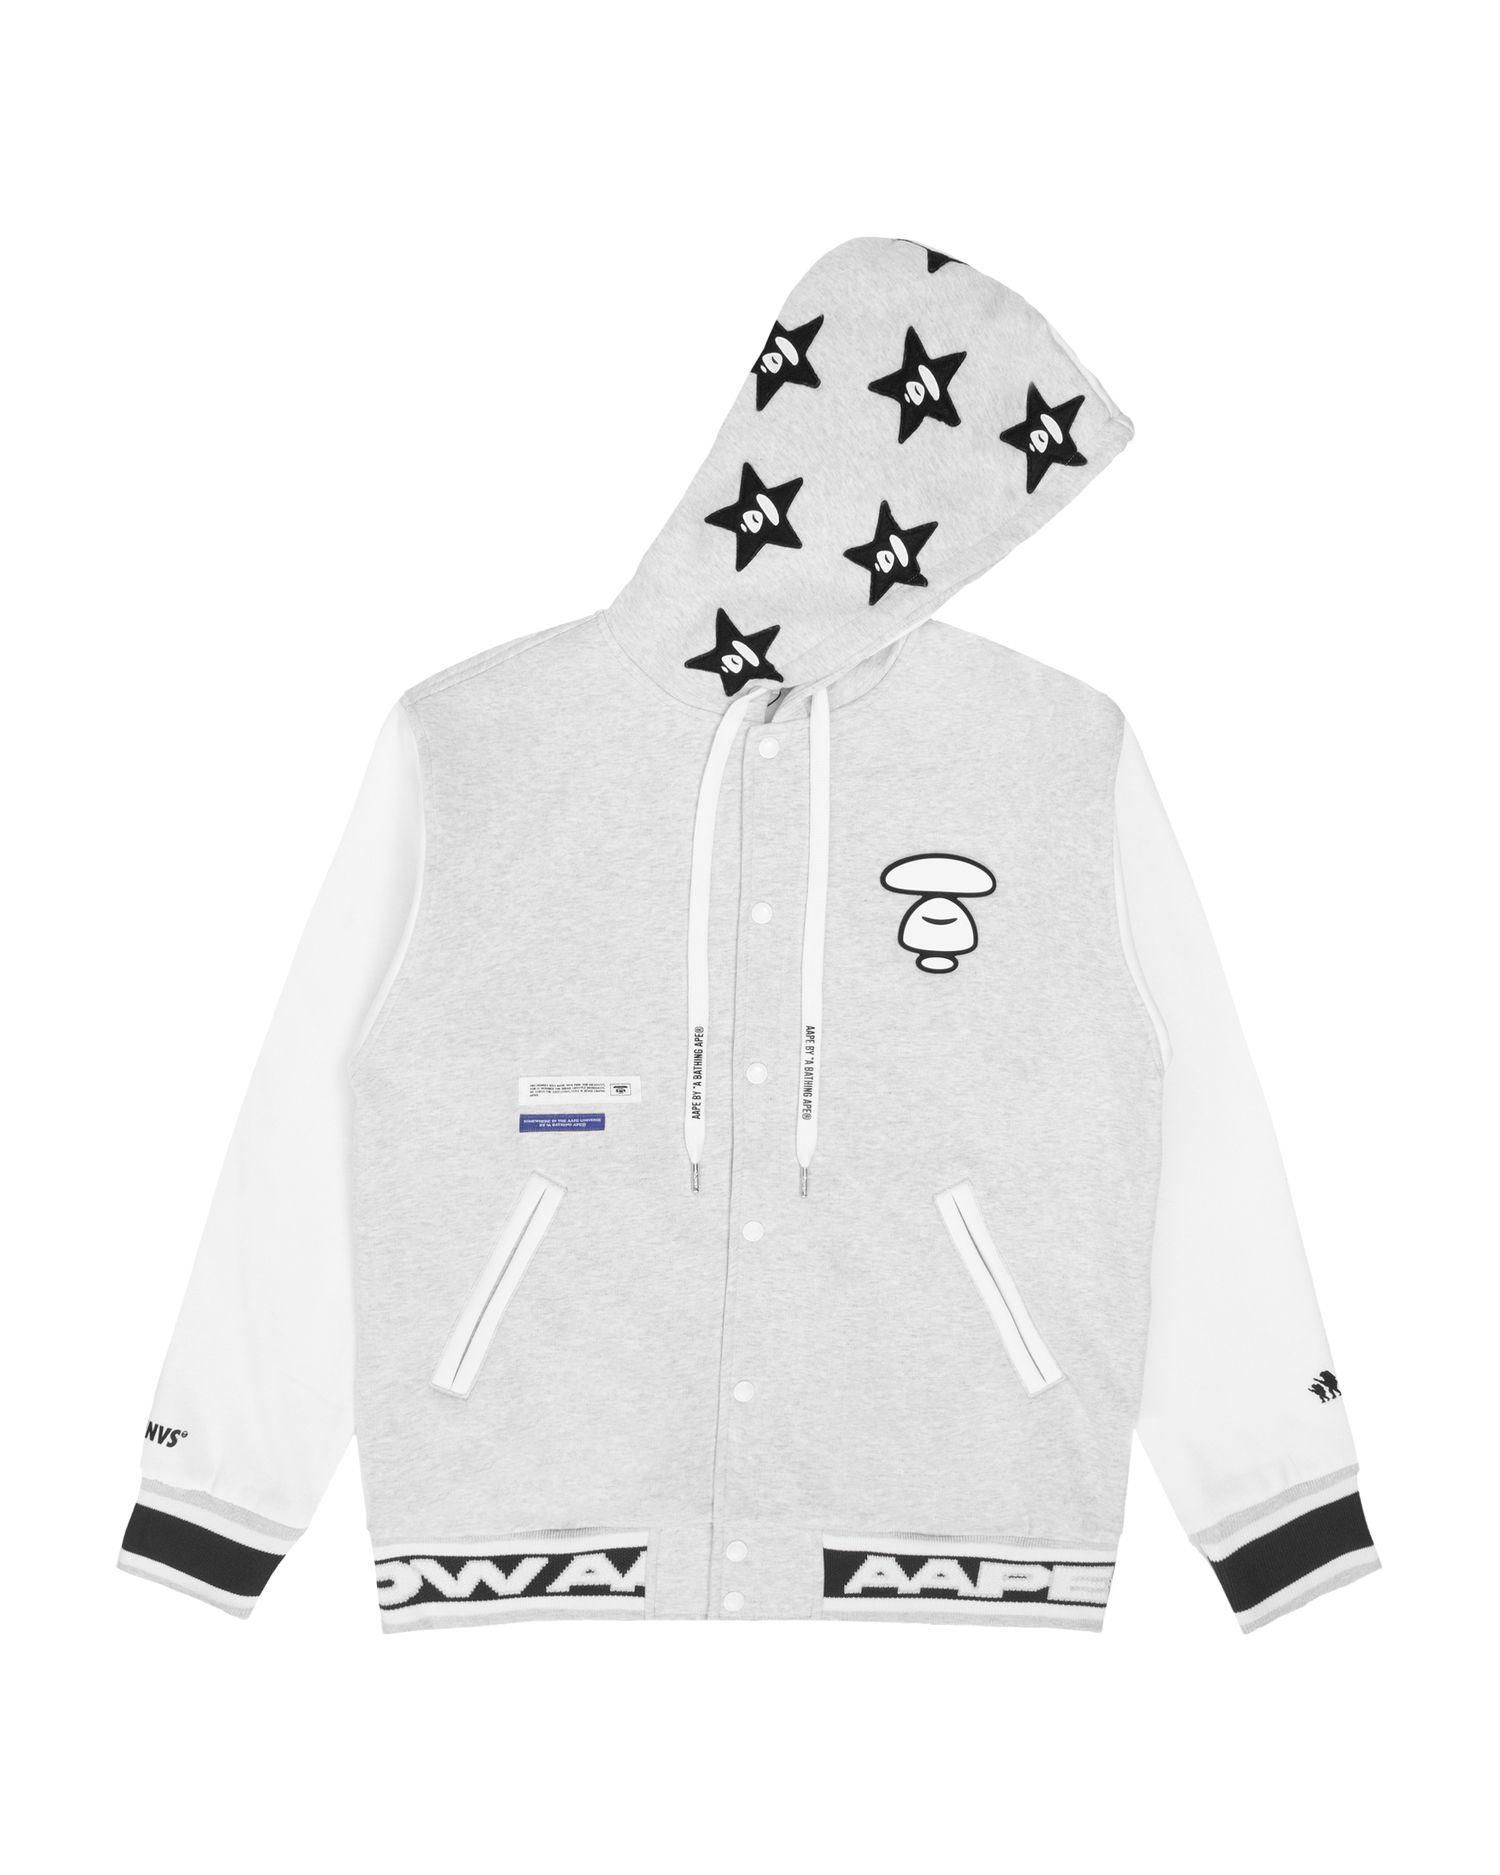 Moonface hoodied baseball jacket by AAPE